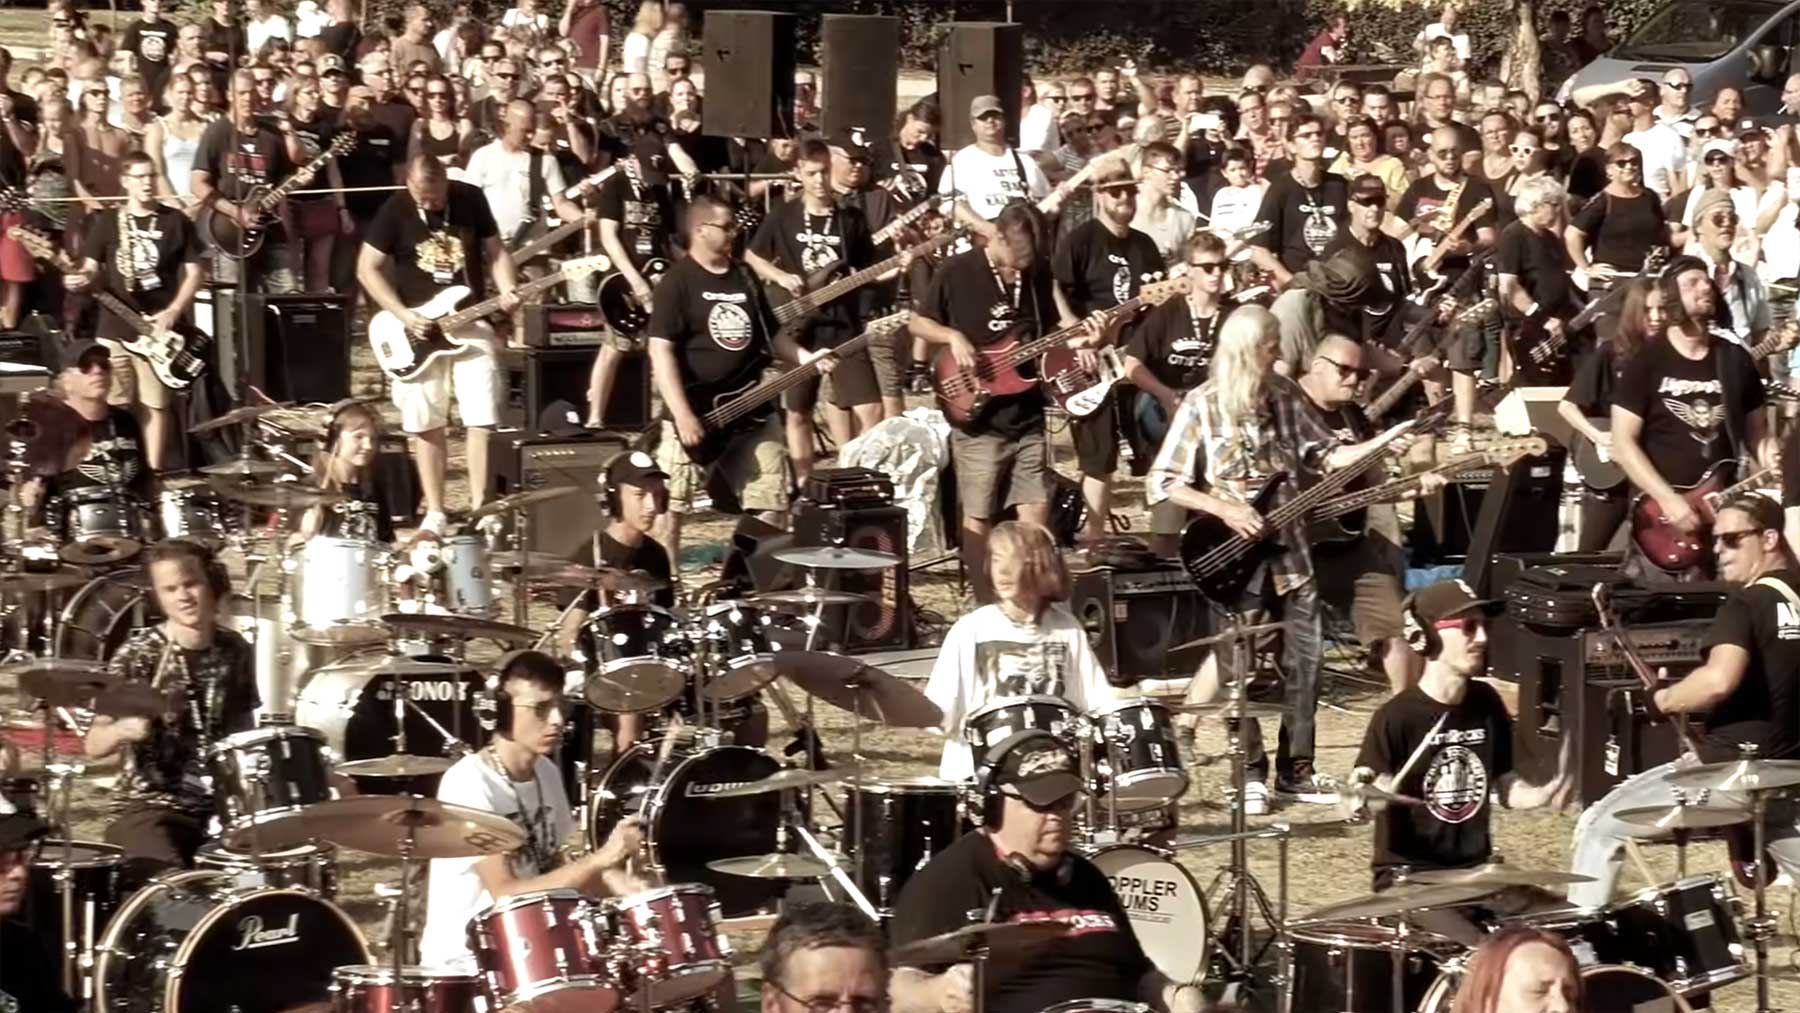 400 Musiker:innen spielen gemeinsam Linkin Parks "New Divide" 400-musikerinnen-spielen-linkin-park 